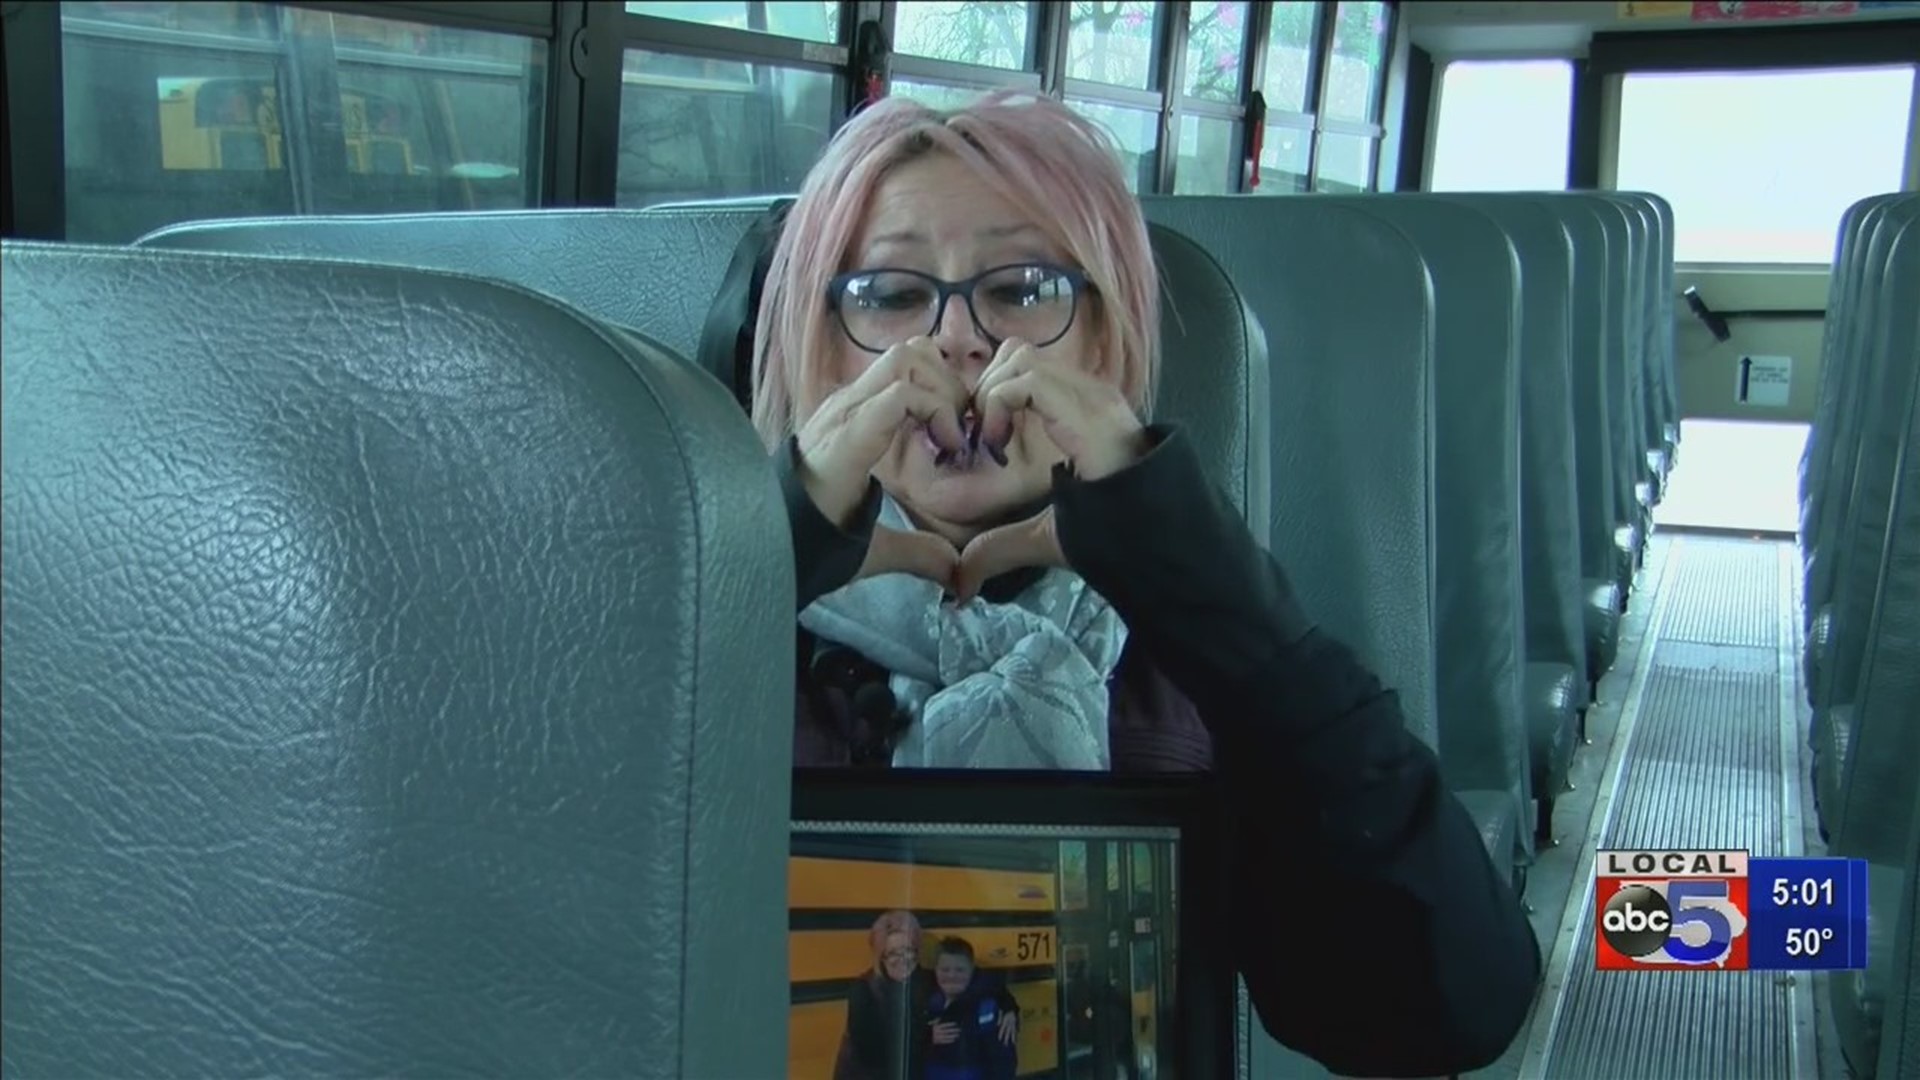 Des Moines bus driver receives heartwarming surprise